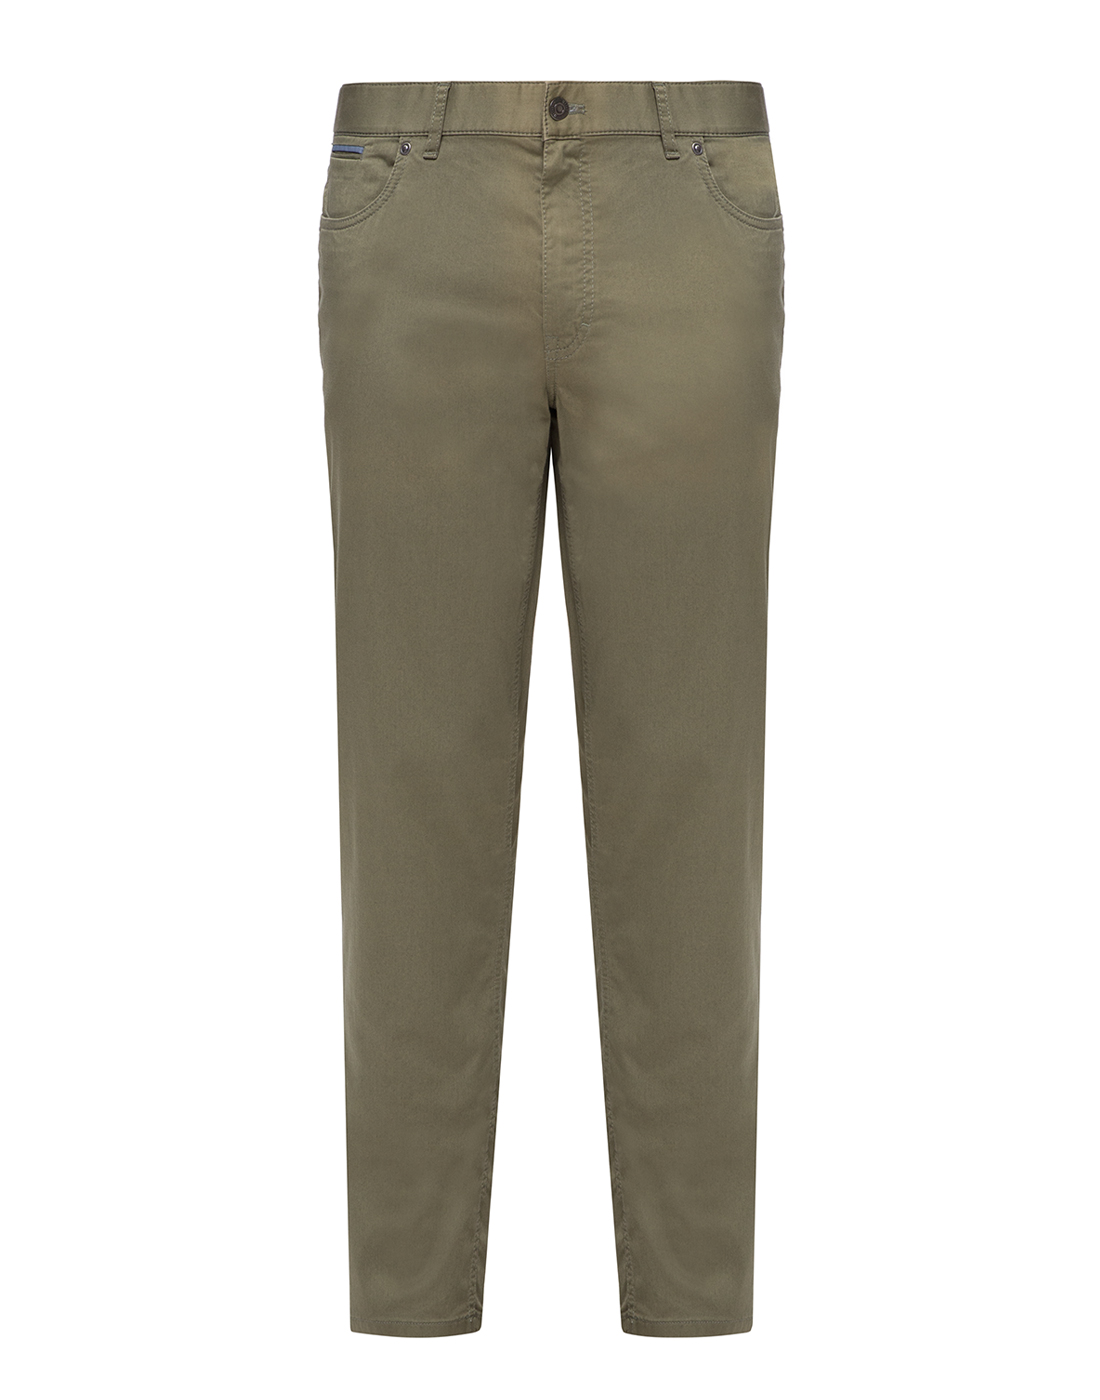 Мужские зеленые брюки Hiltl  S75737 23 62900-1